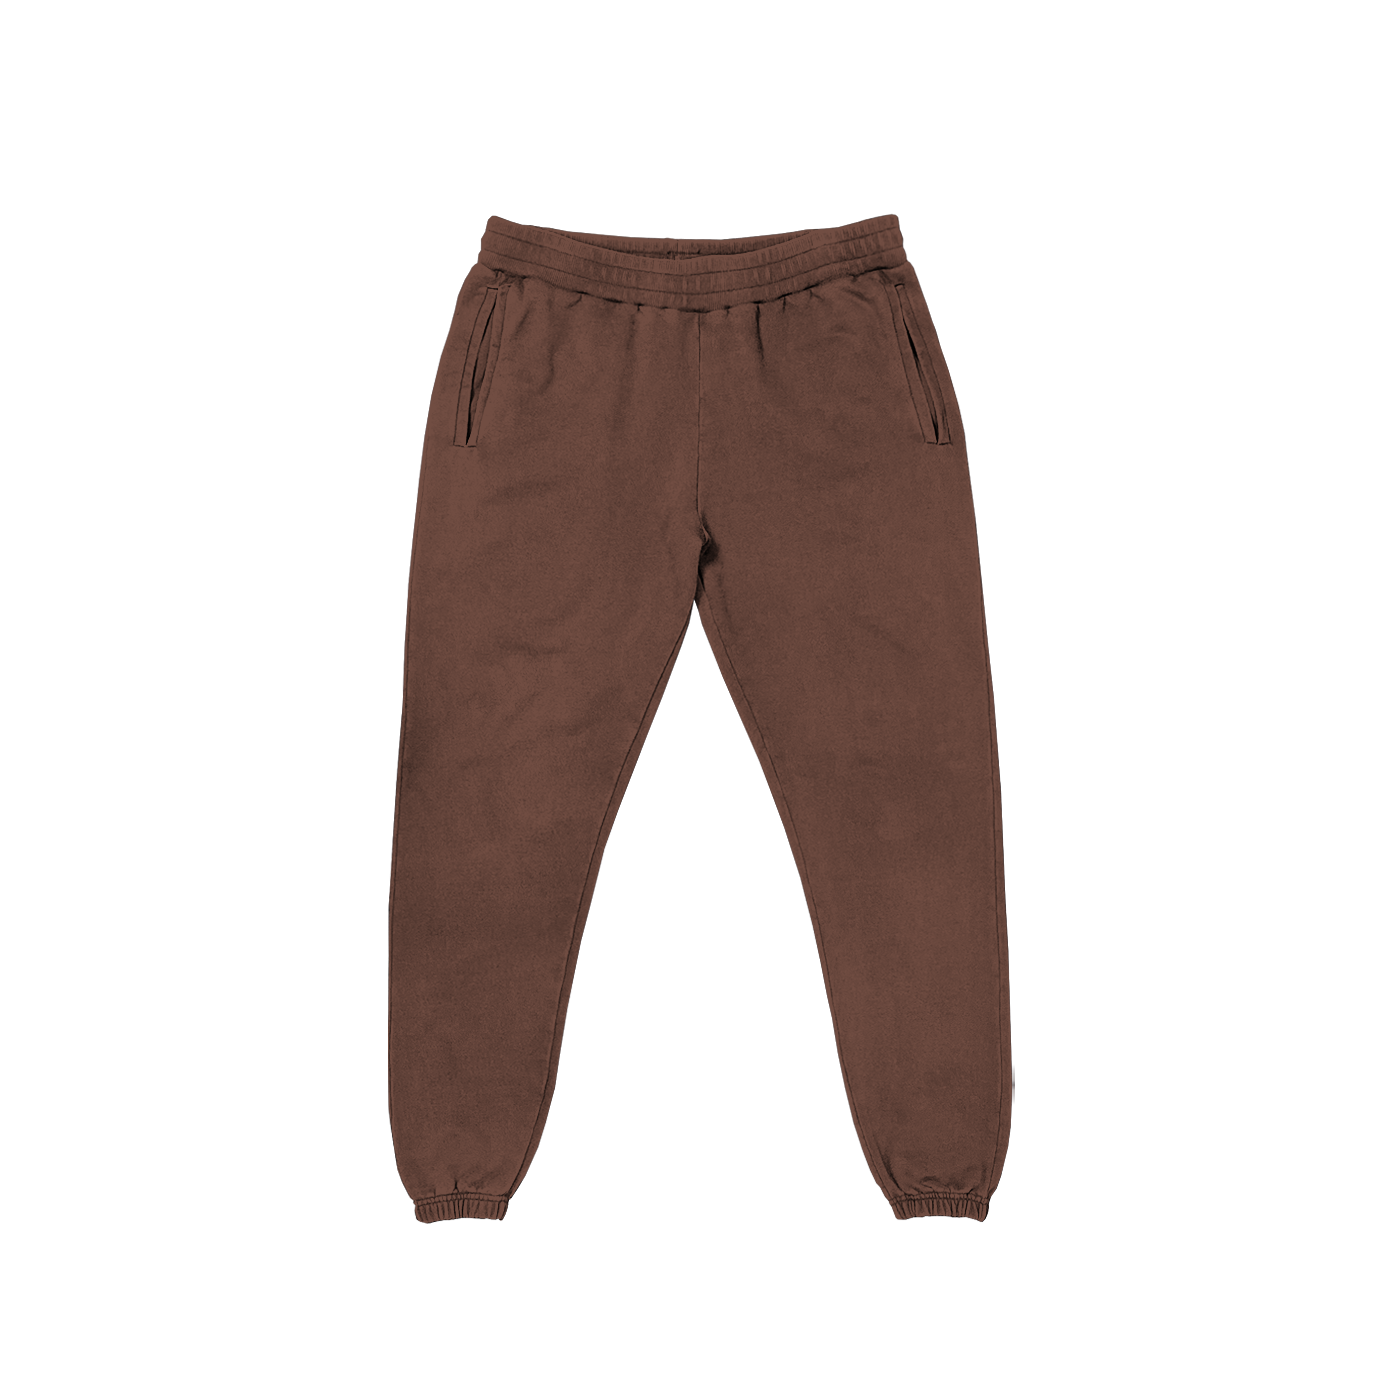 "Pantalon de survêtement marron avec cordon de serrage, confortable pour la détente et personnalisable sur prynt.shop."